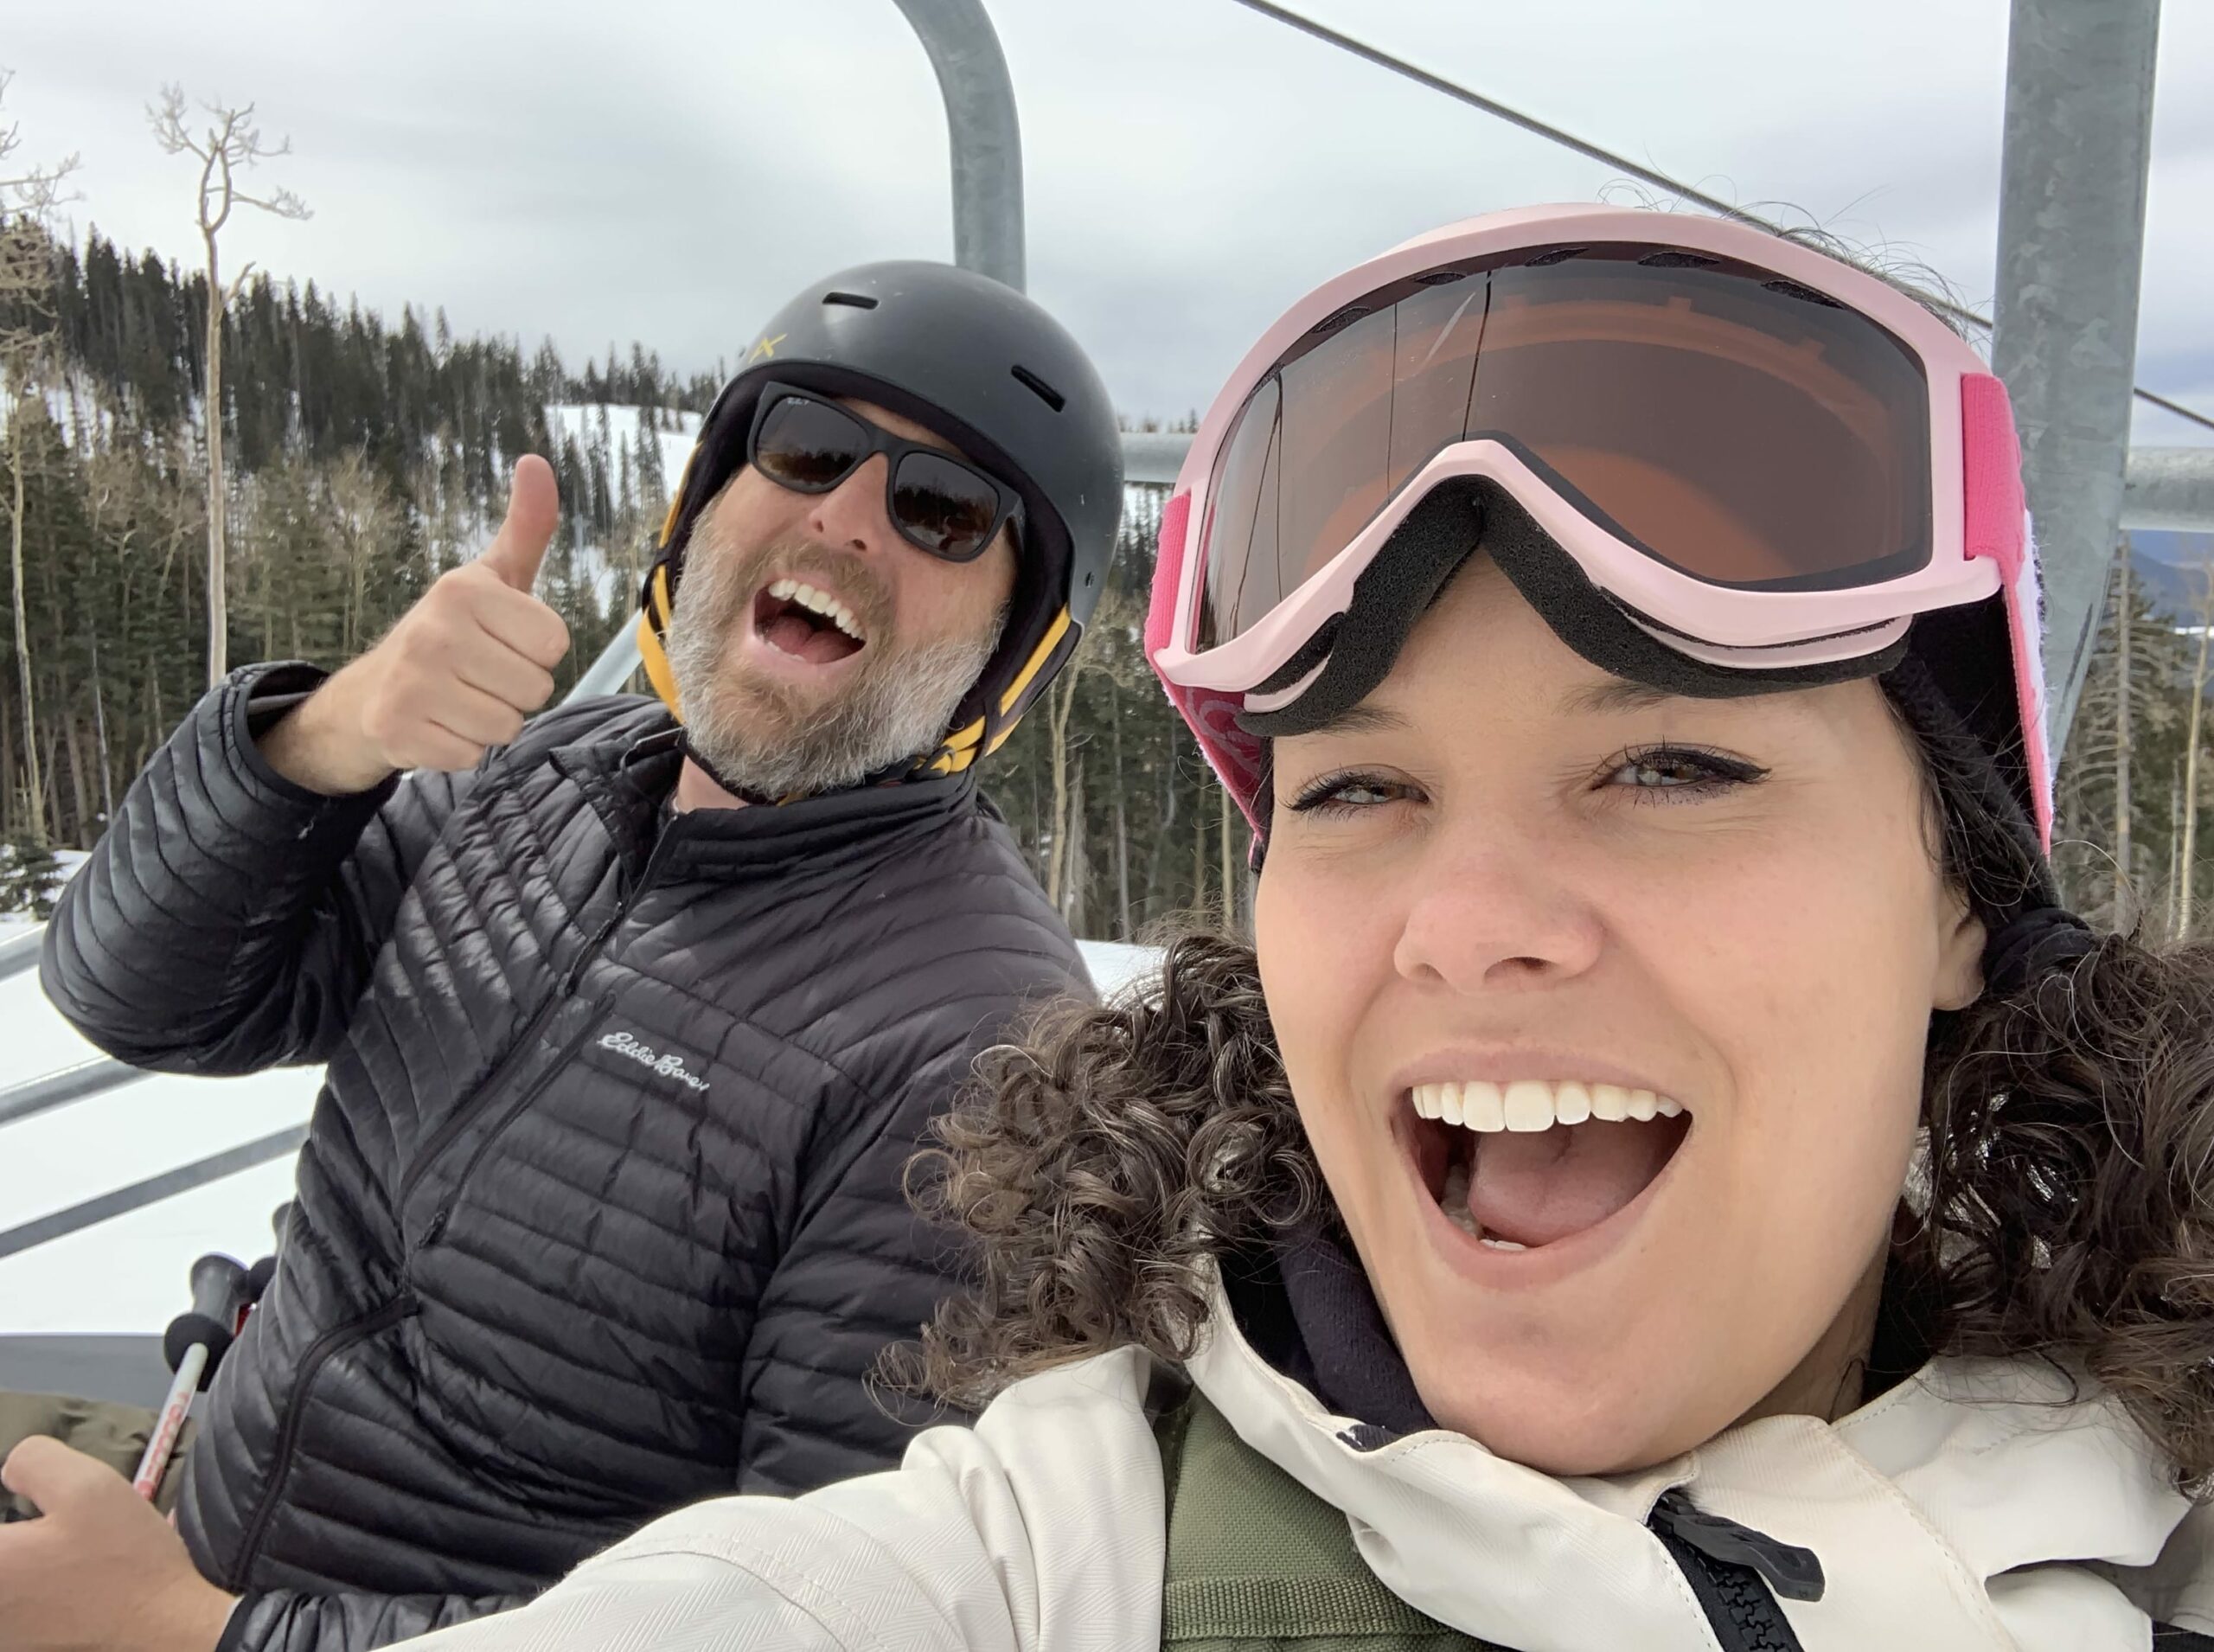 man and woman on ski lift waving at camera